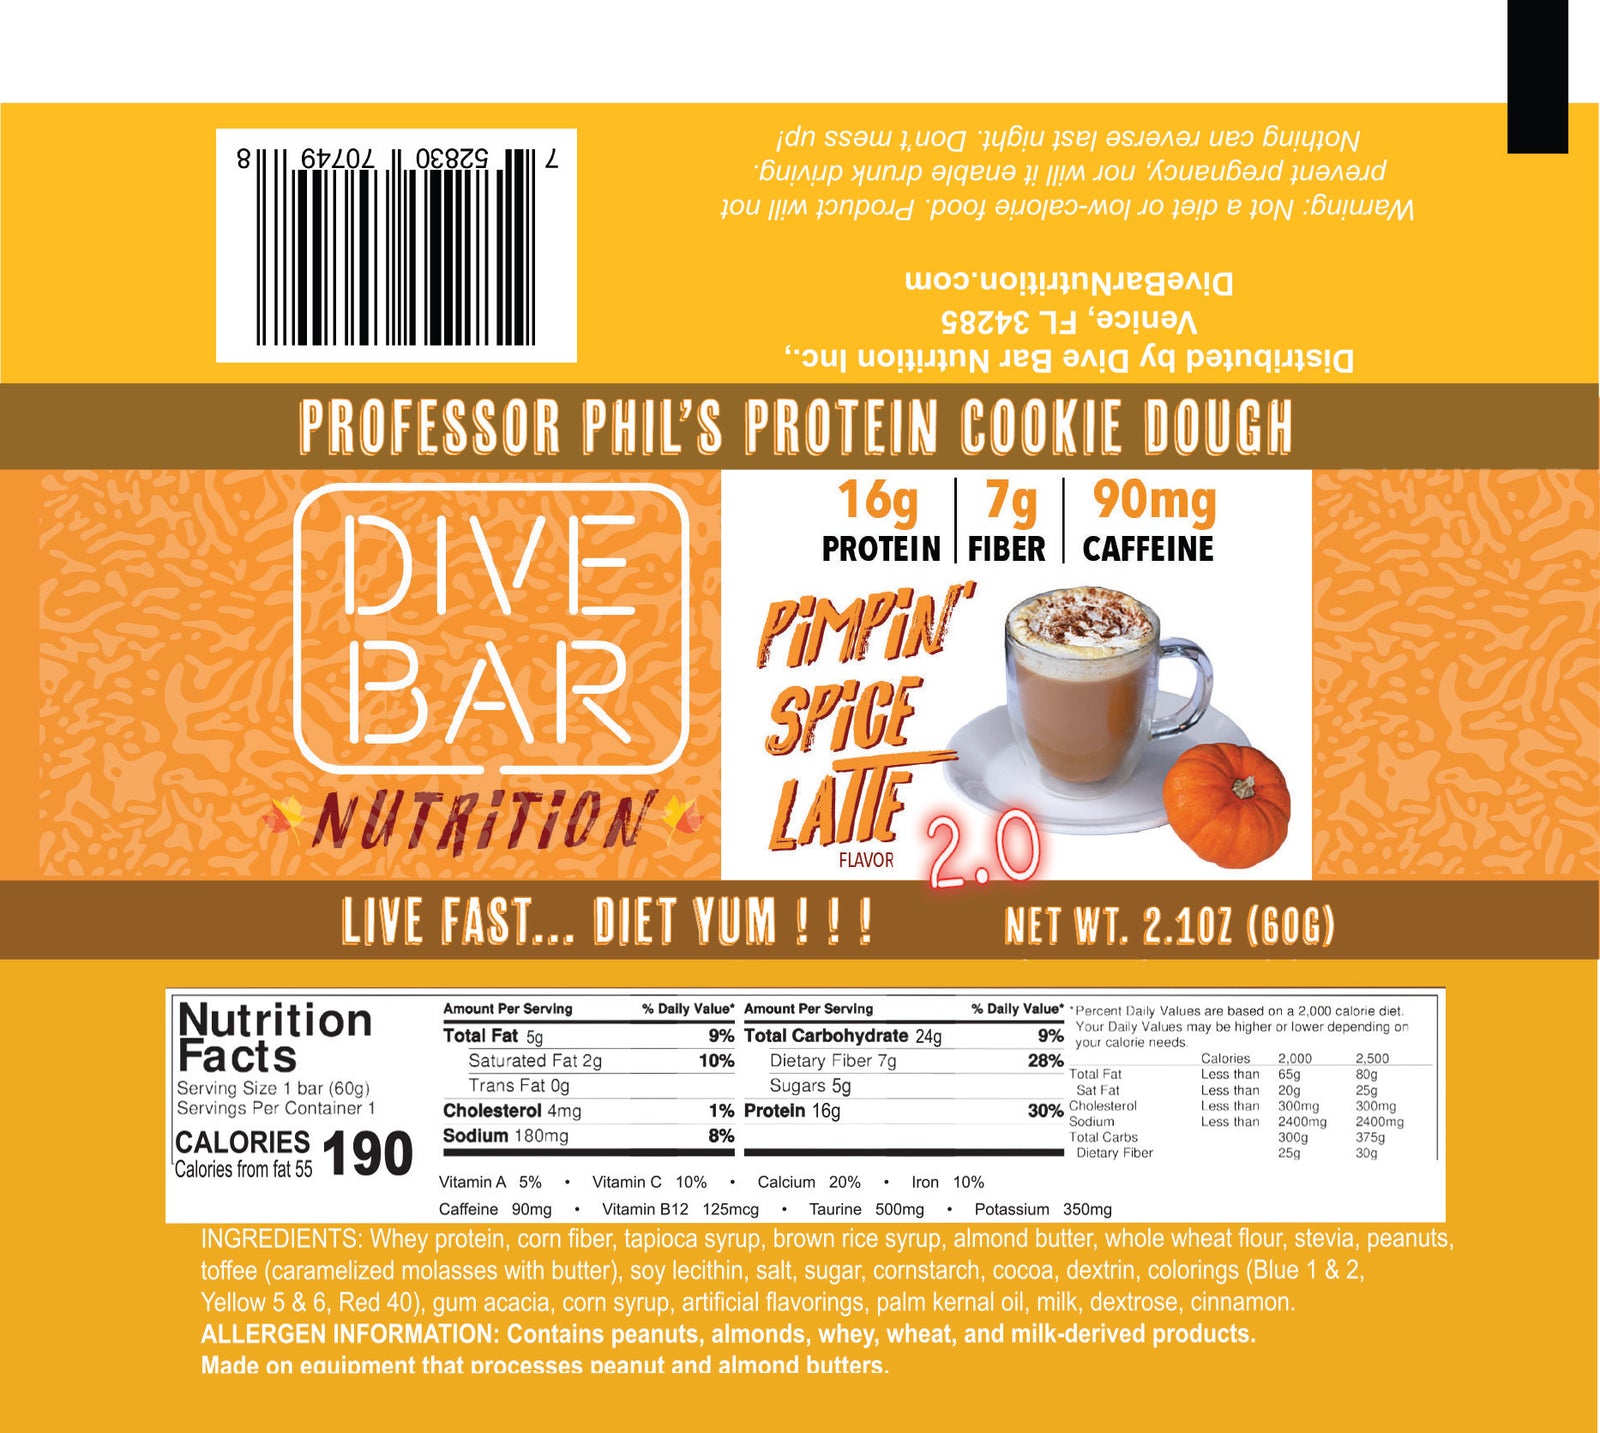 PIMPIN Spice Latte - 6 Bars